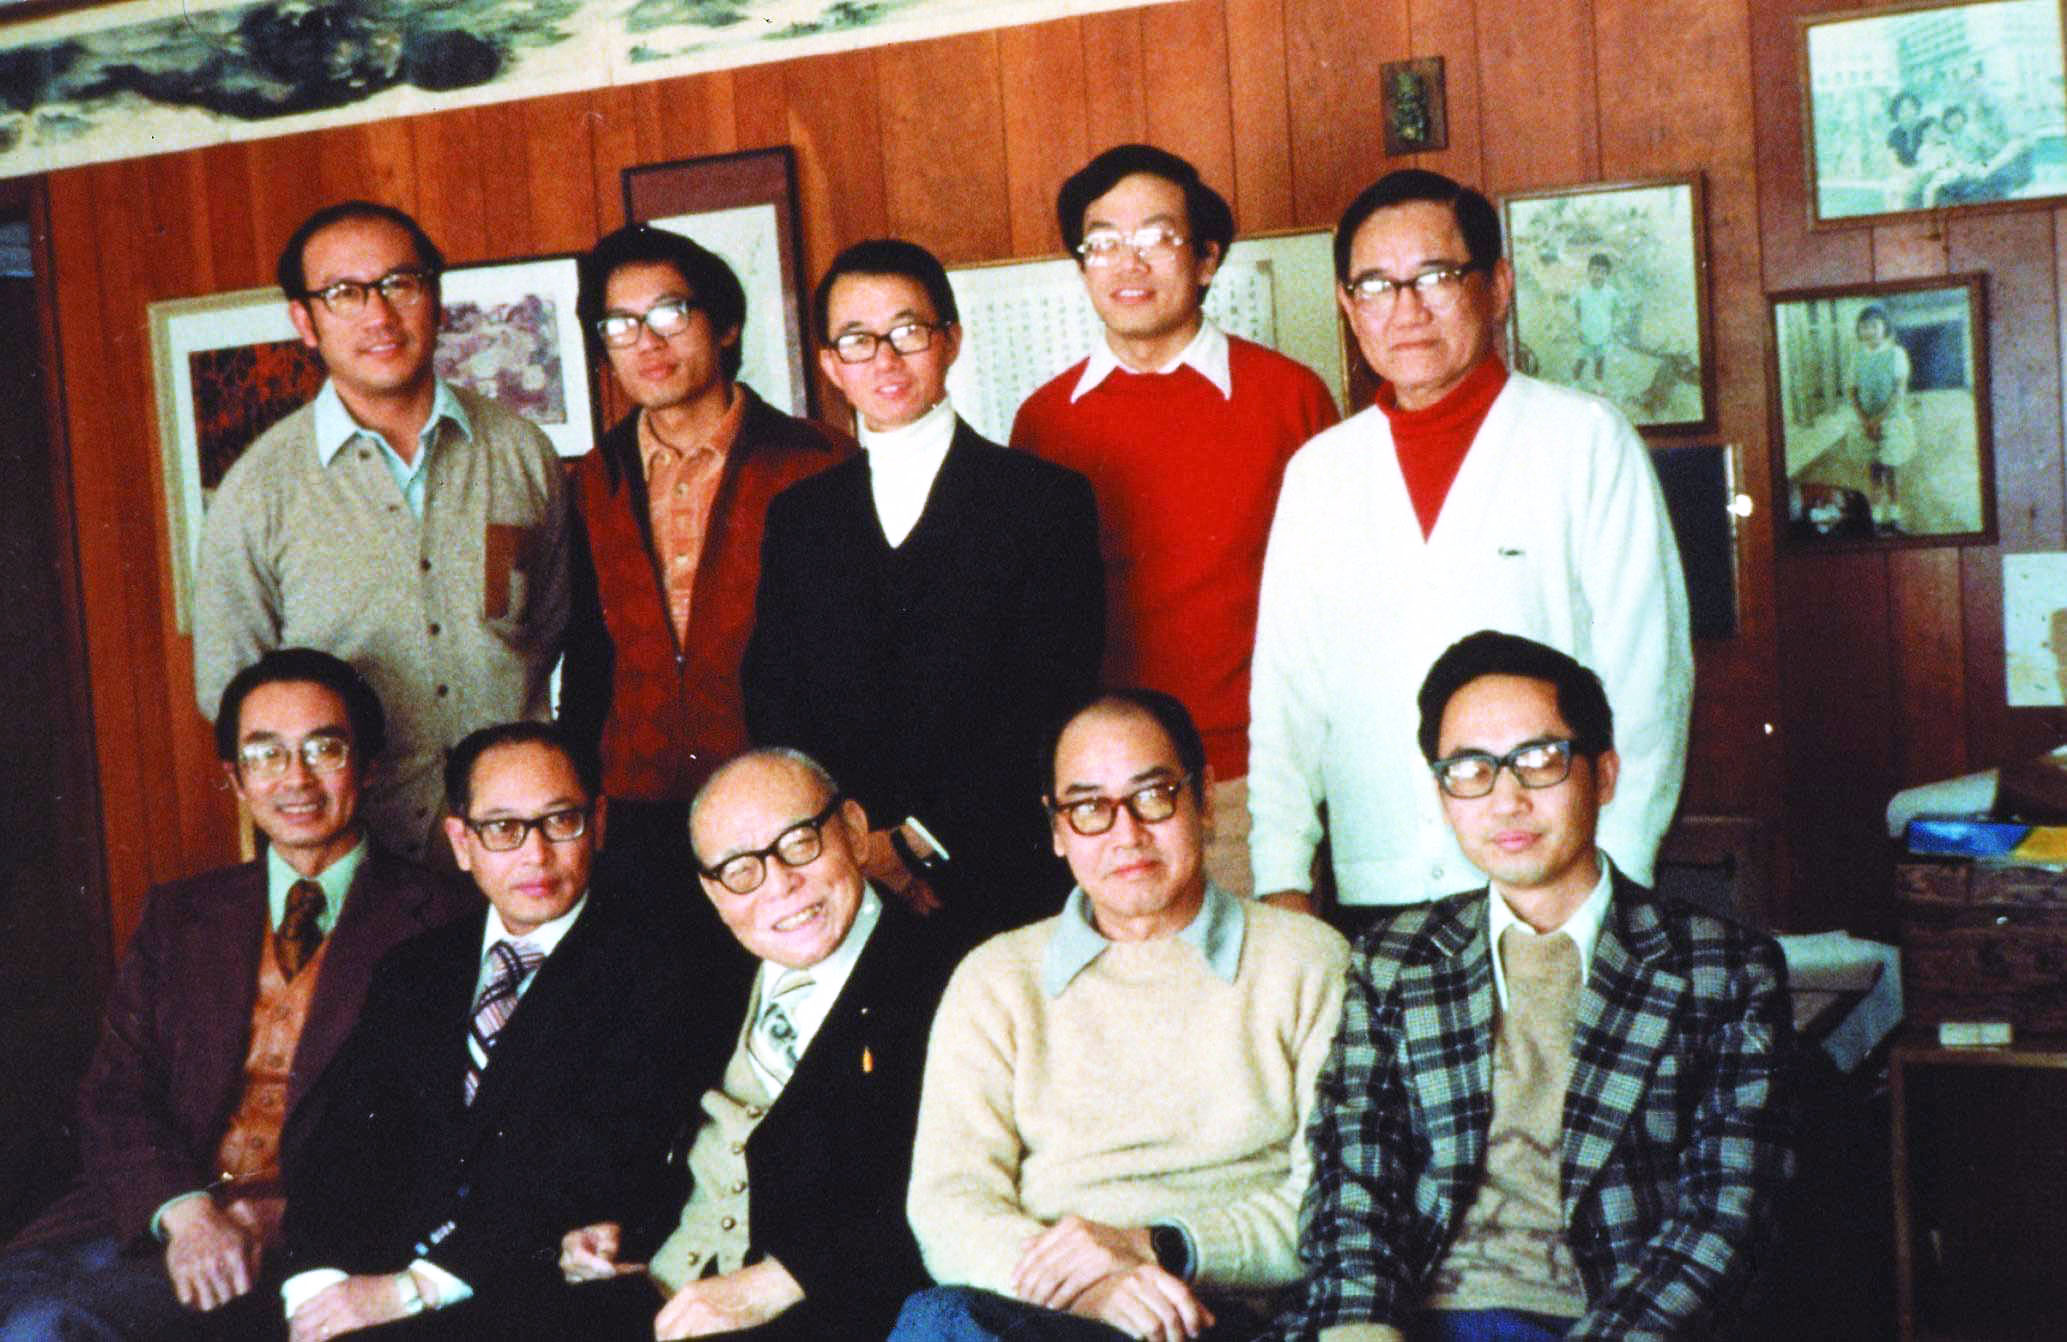 1974年，潘文淵博士在美國積極規劃積體電路技術，並召集當時美國IC界有名的華人專家成立「電子技術諮詢委員會」，由潘文淵擔任主任委員，以做為台灣技術、工業發展上的諮詢機構。前排左起凌宏璋、葛文勳、趙曾玨、羅念、胡定華，後排左起厲鼎毅、史欽泰、李天培、楊丁元、潘文淵。